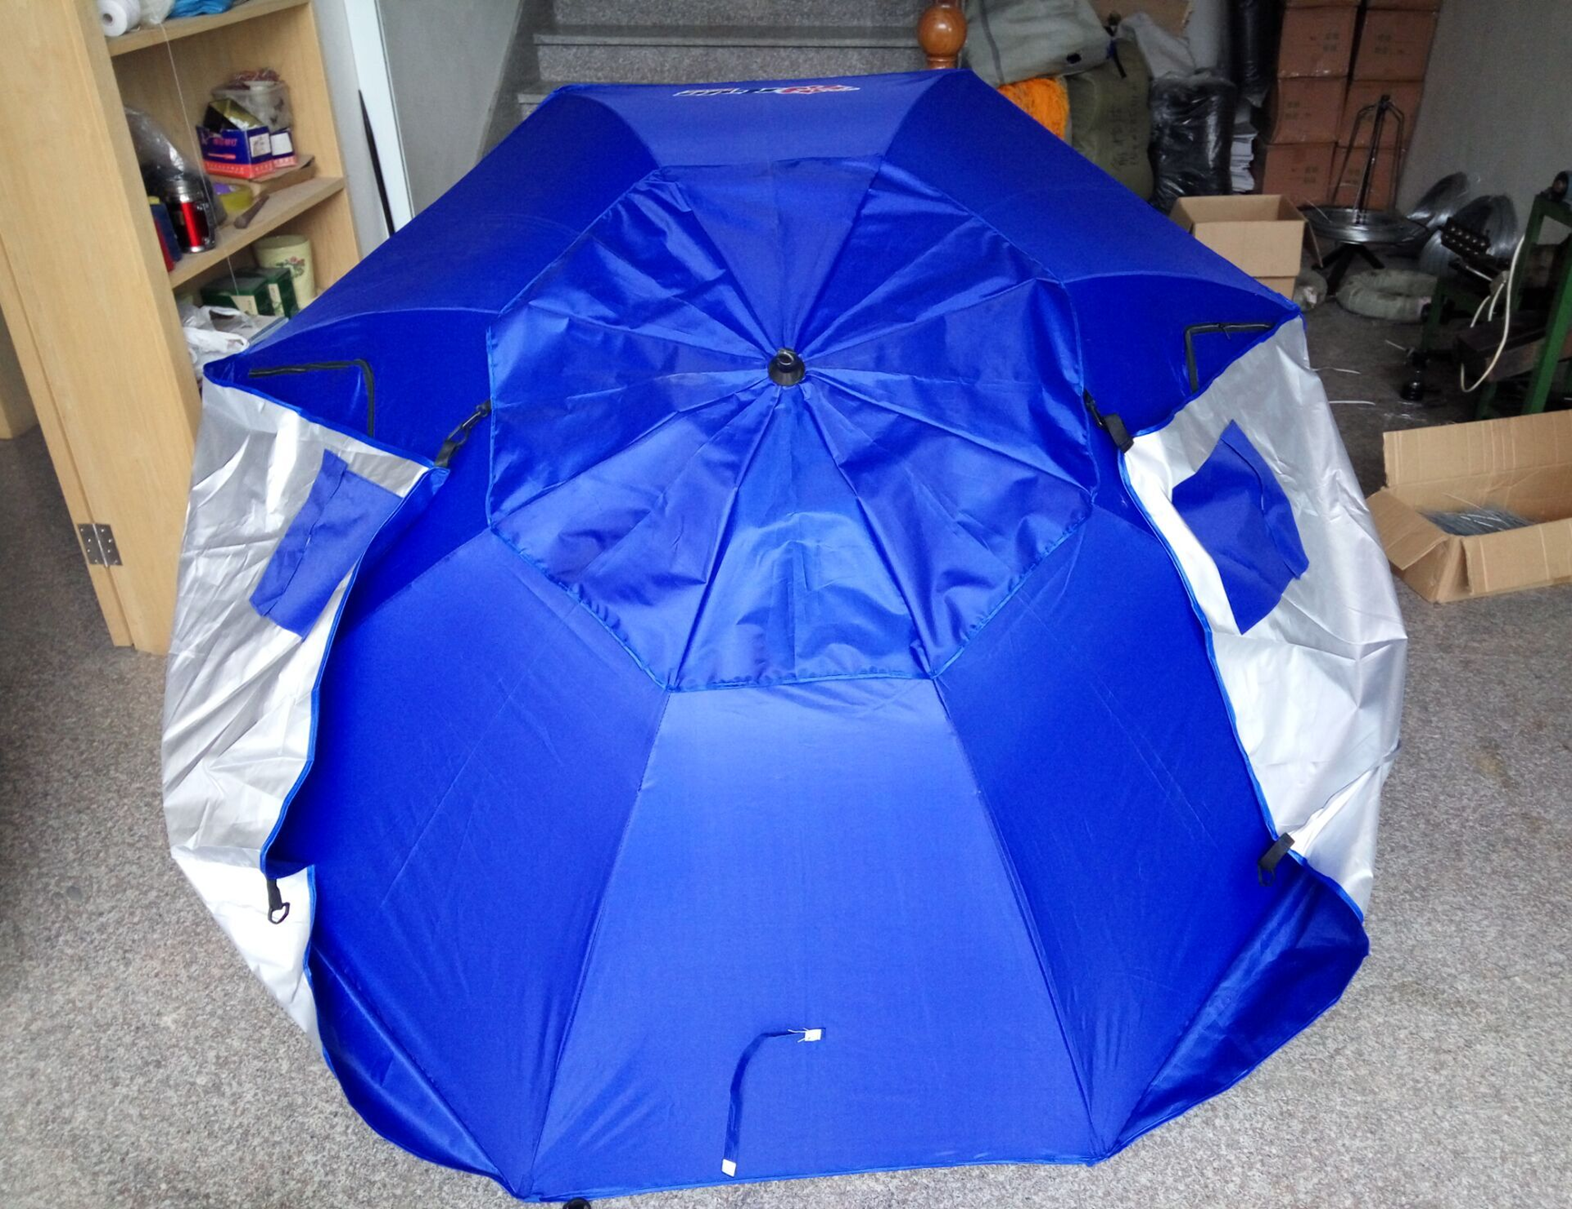 Зонт-палатка 260 см, окошки из ПВХ, 4 колышка, сумка, арт. LHBU-260SPB